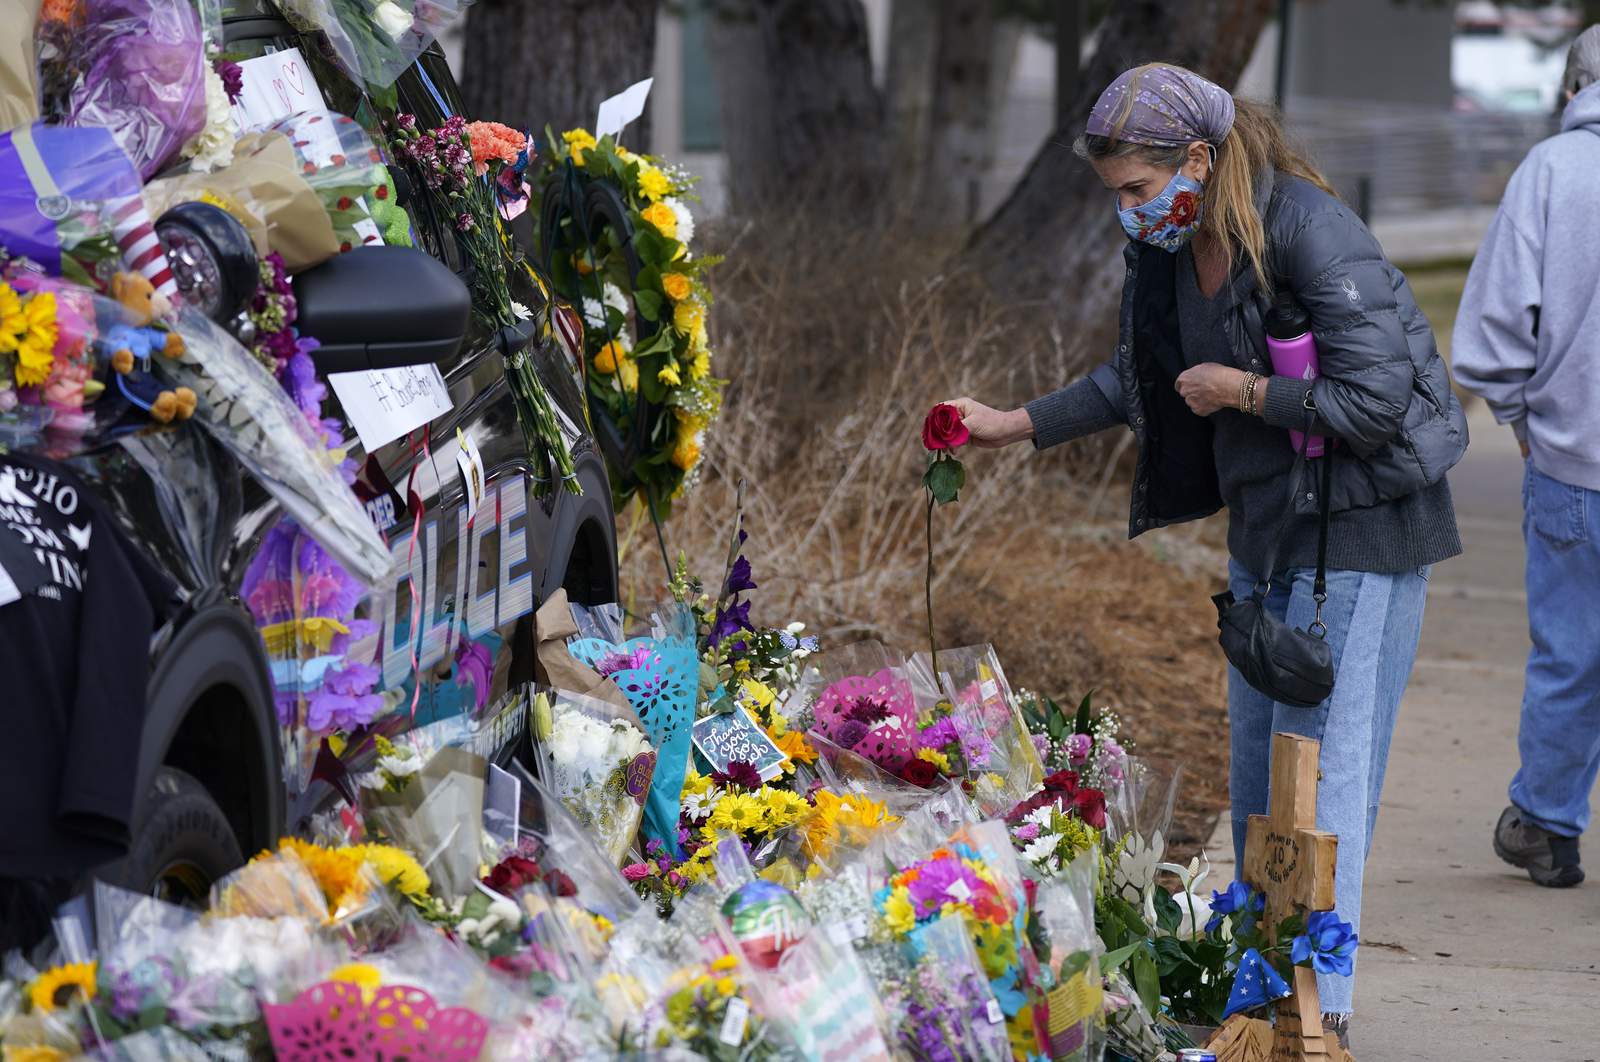 Colorado shooting suspect prone to rage, delusions, officials say